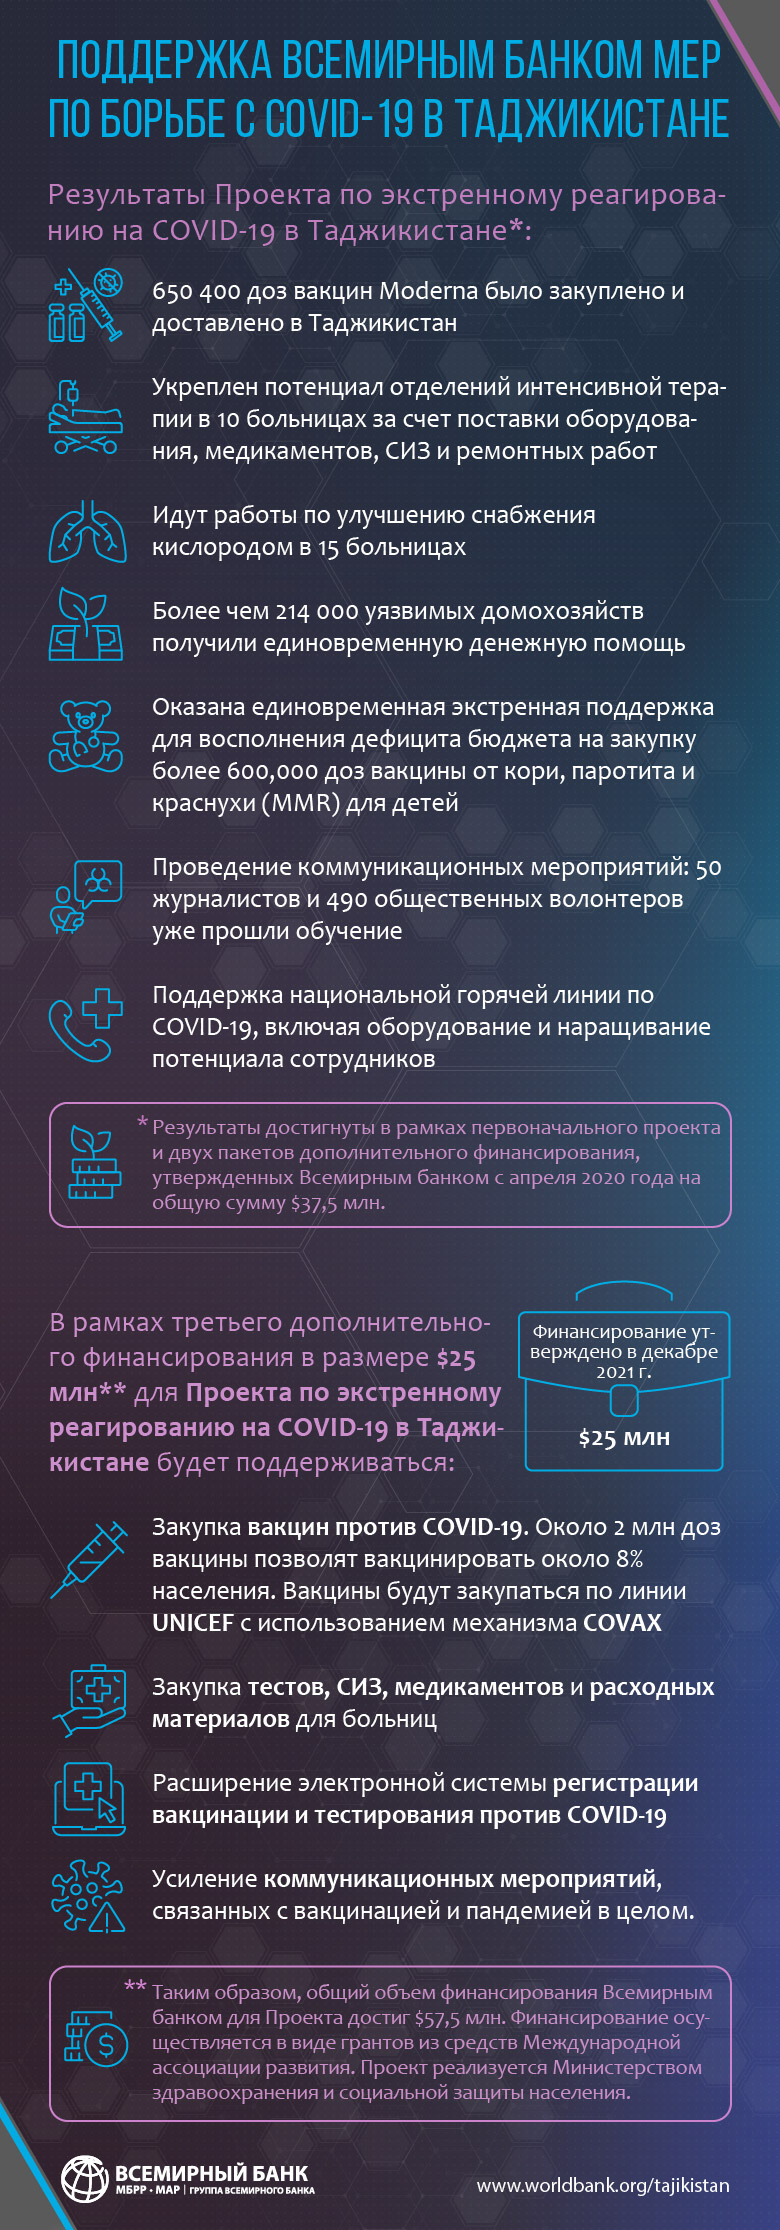 Инфографика о поддержке Всемирным банком борьбы с COVID-19 в Таджикистане